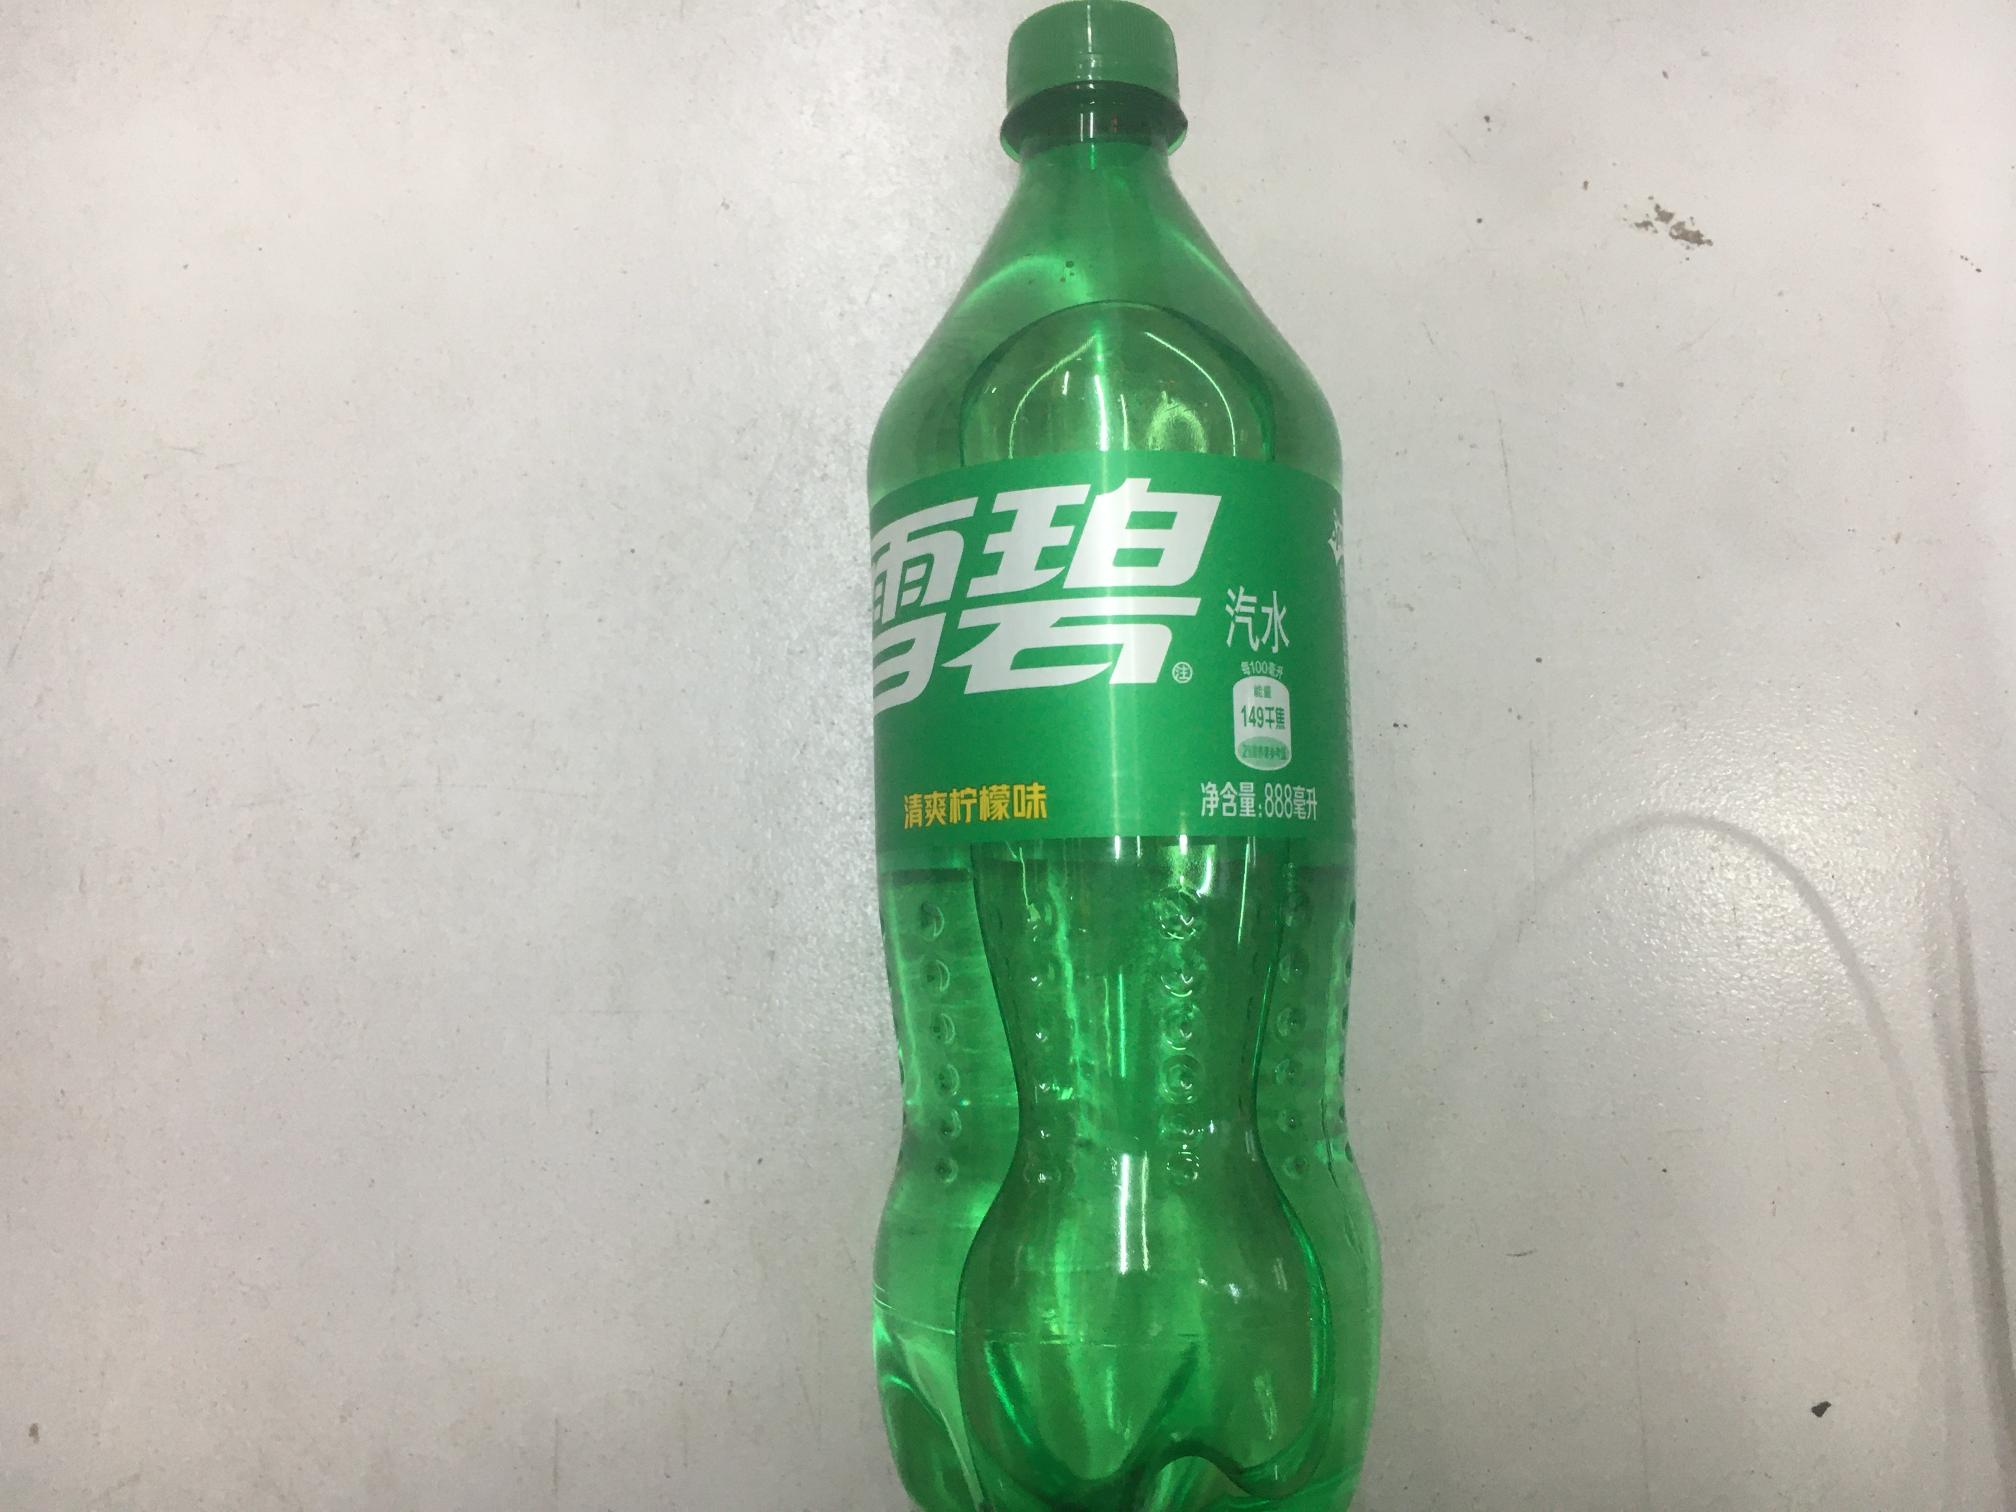 雪碧888ml/瓶(清爽柠檬味)